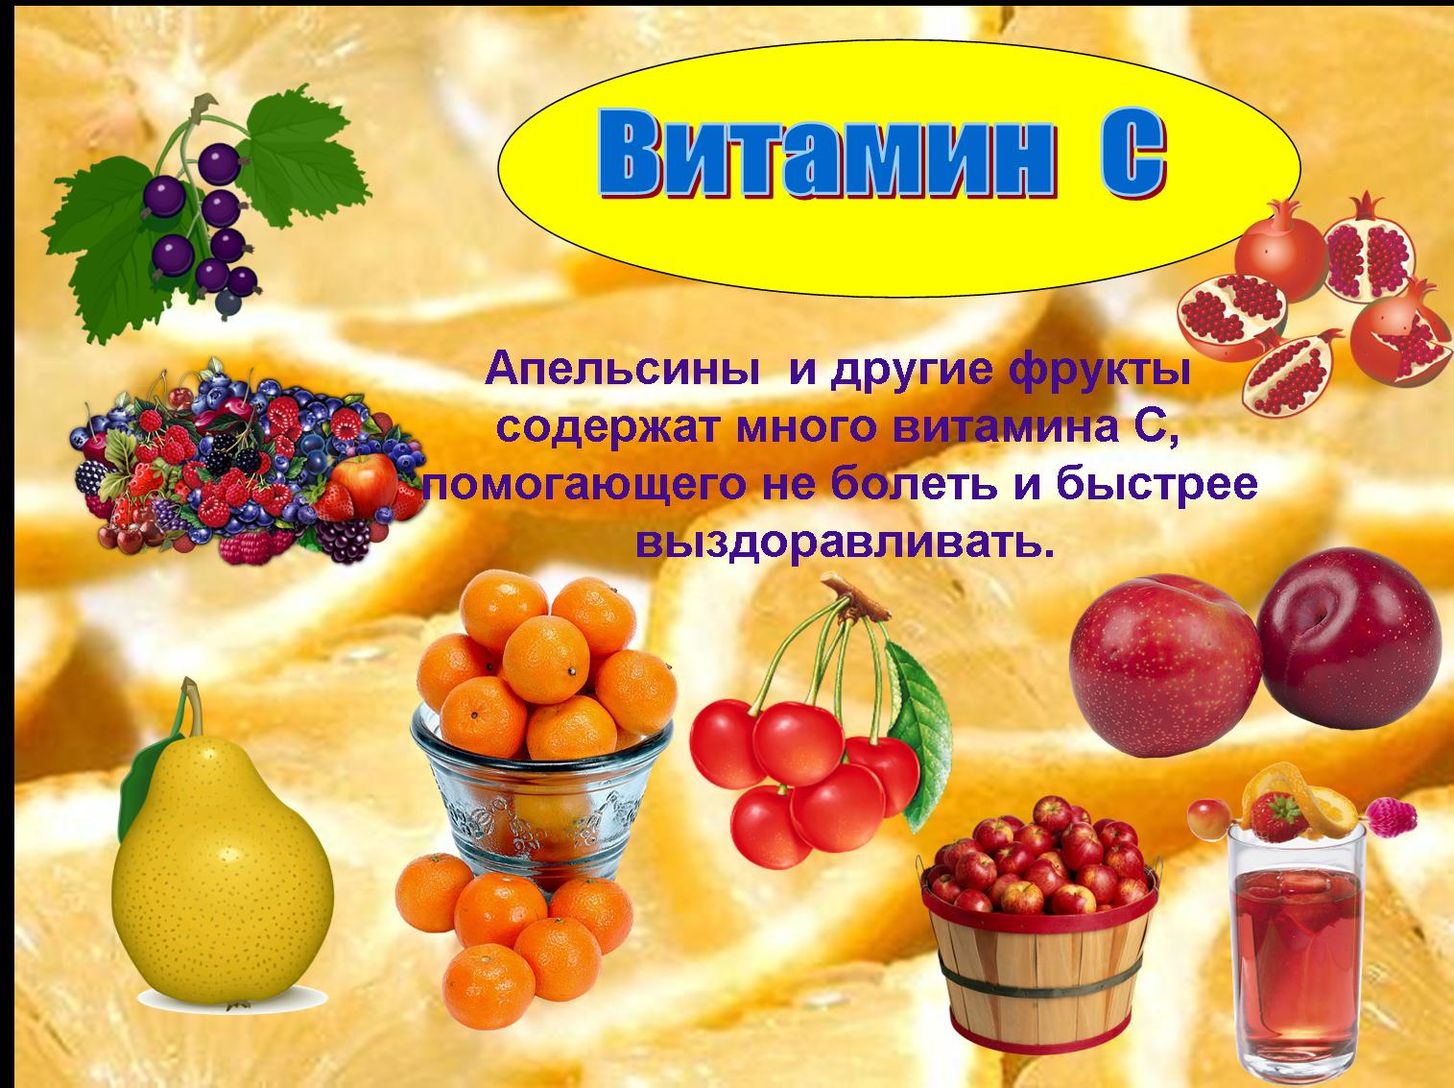 Польза фруктов для здоровья. Фрукты для здоровья. Фрукты для детского сада. Плакат витамины. Витамины урок для детей.